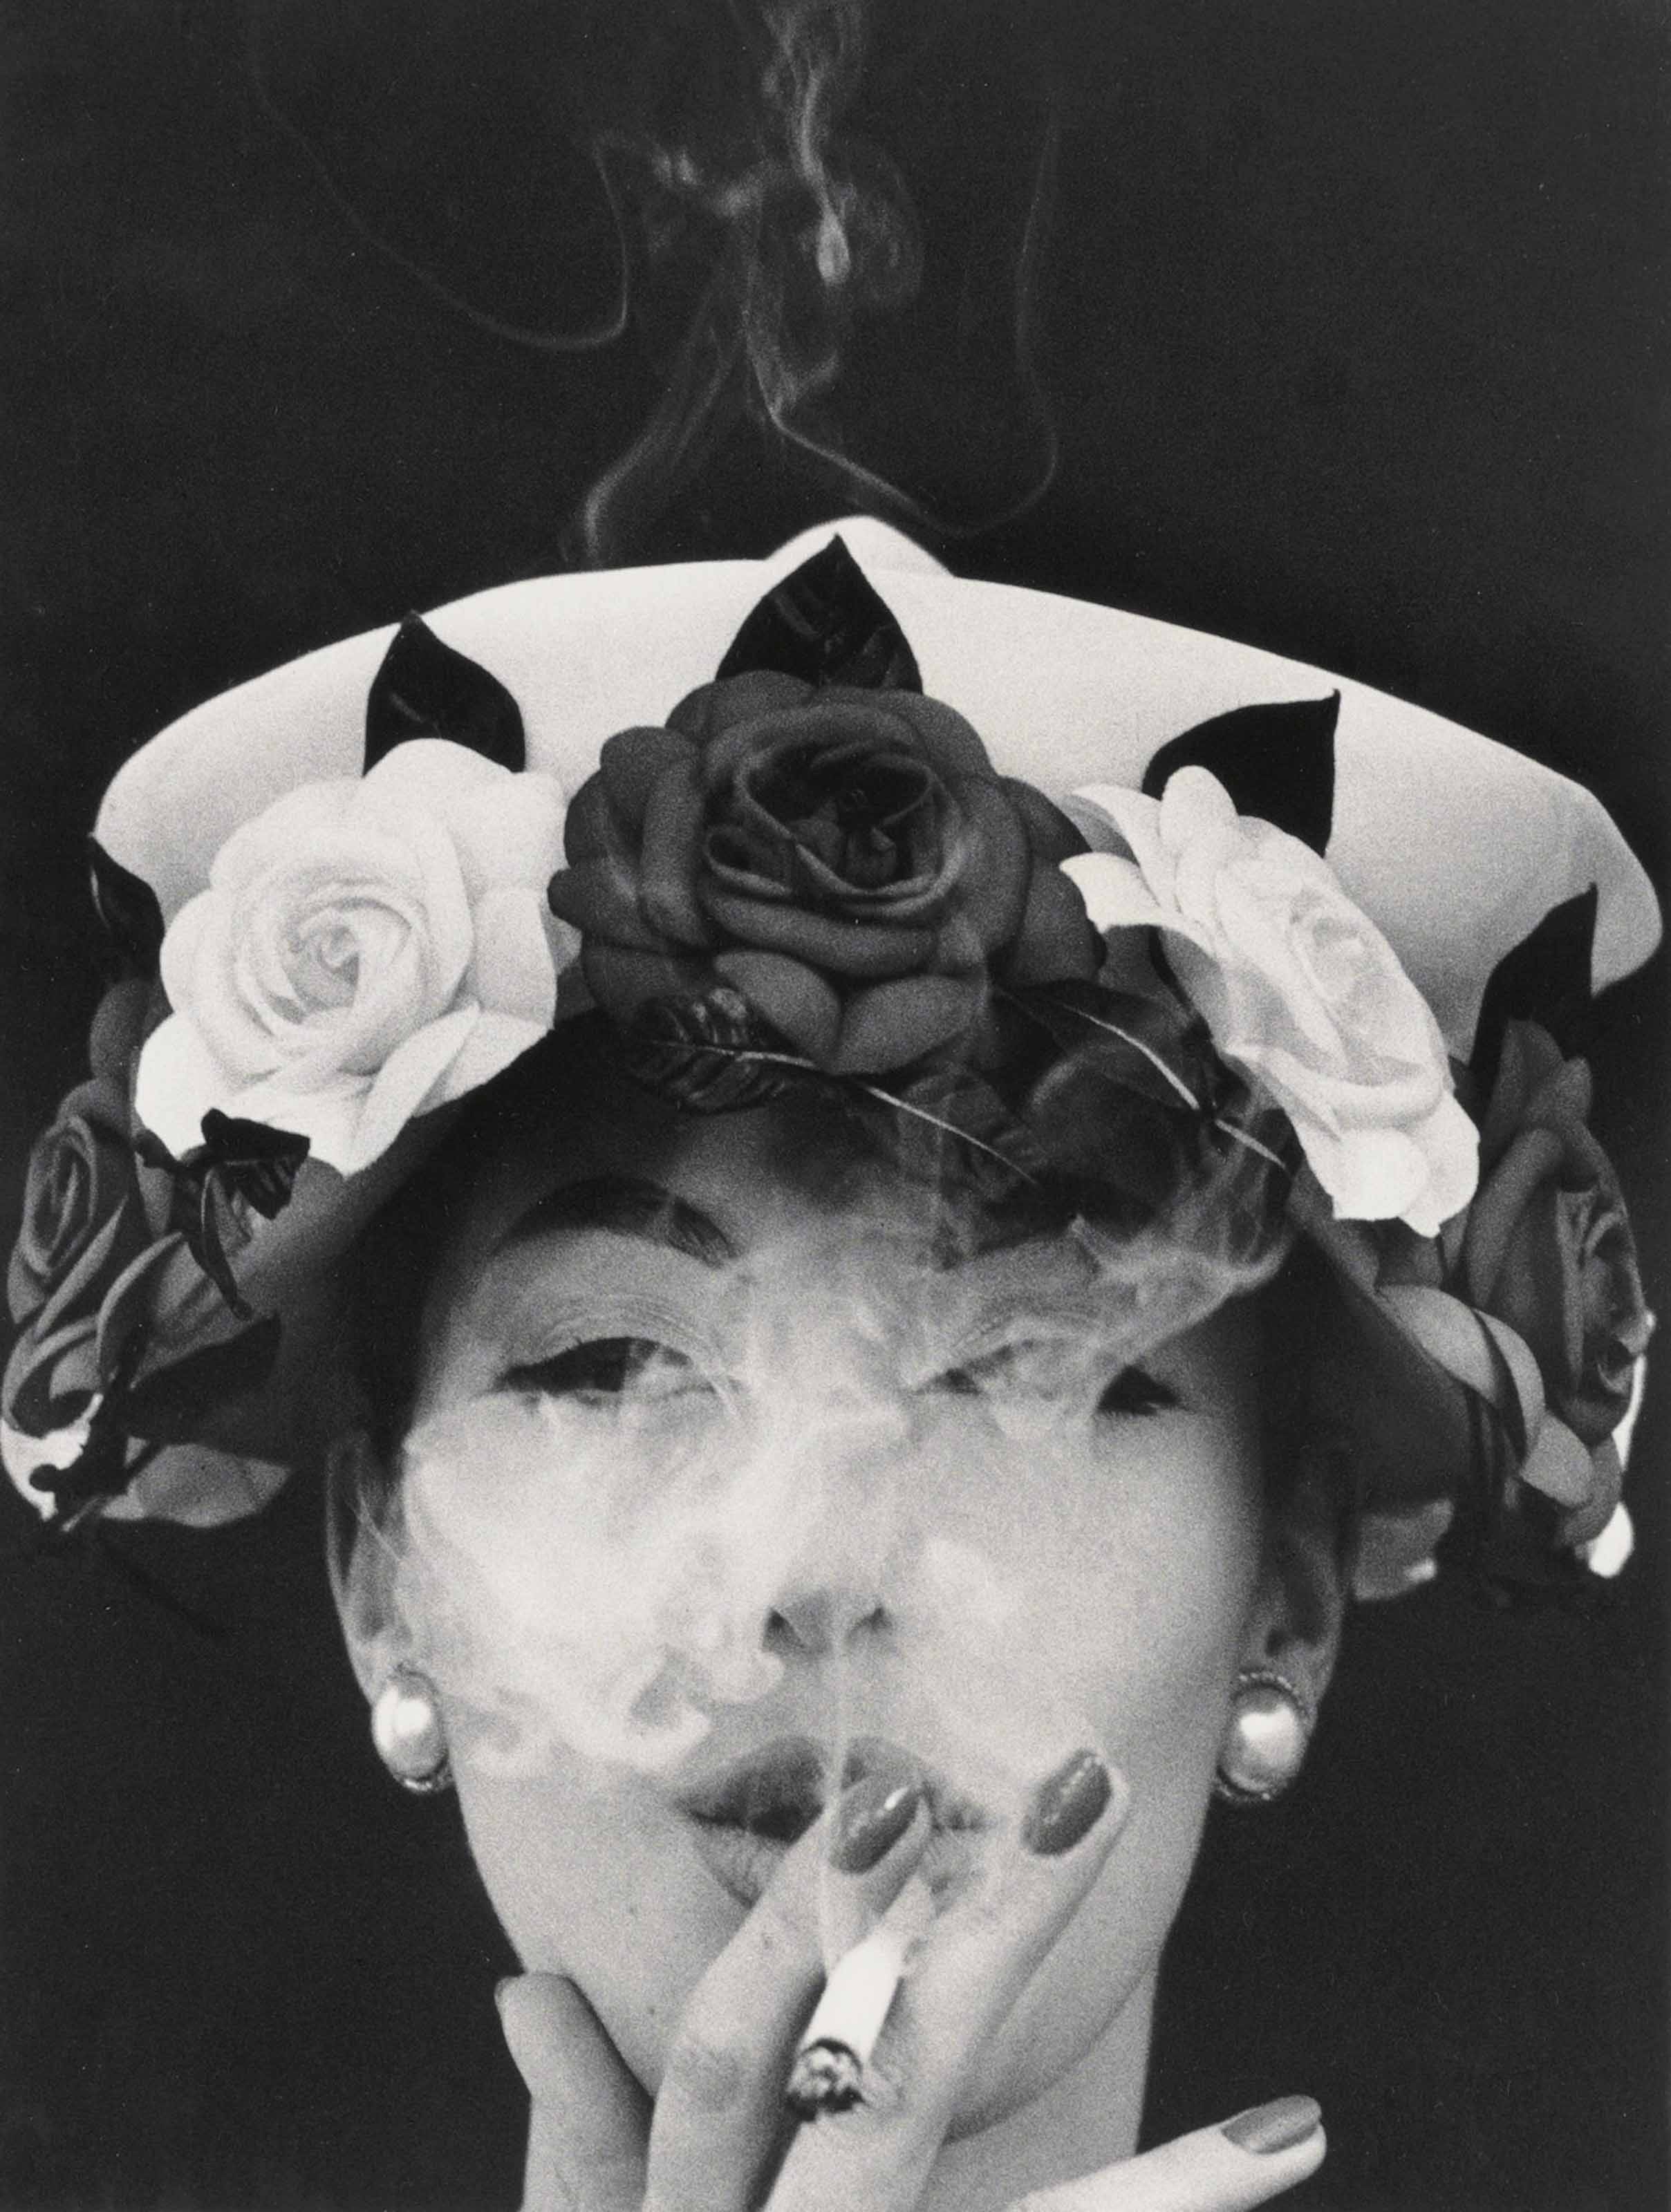 Шляпа и розы, 1956 год. Фотограф Уильям Кляйн